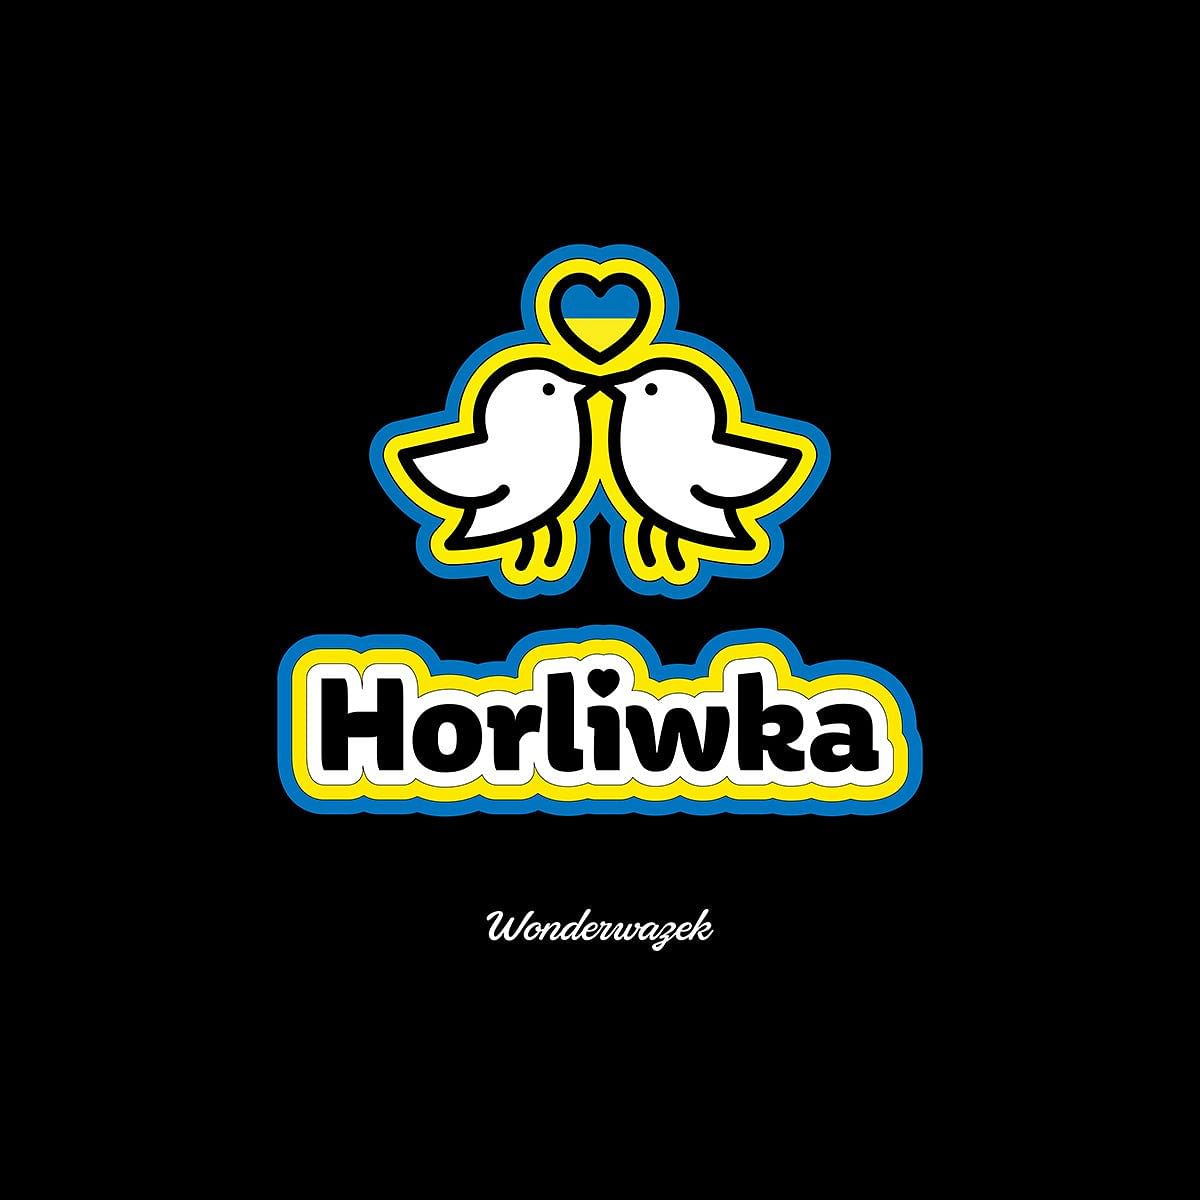 Einkaufstasche • Edition Friedenswazek – Horliwka - Wonderwazek